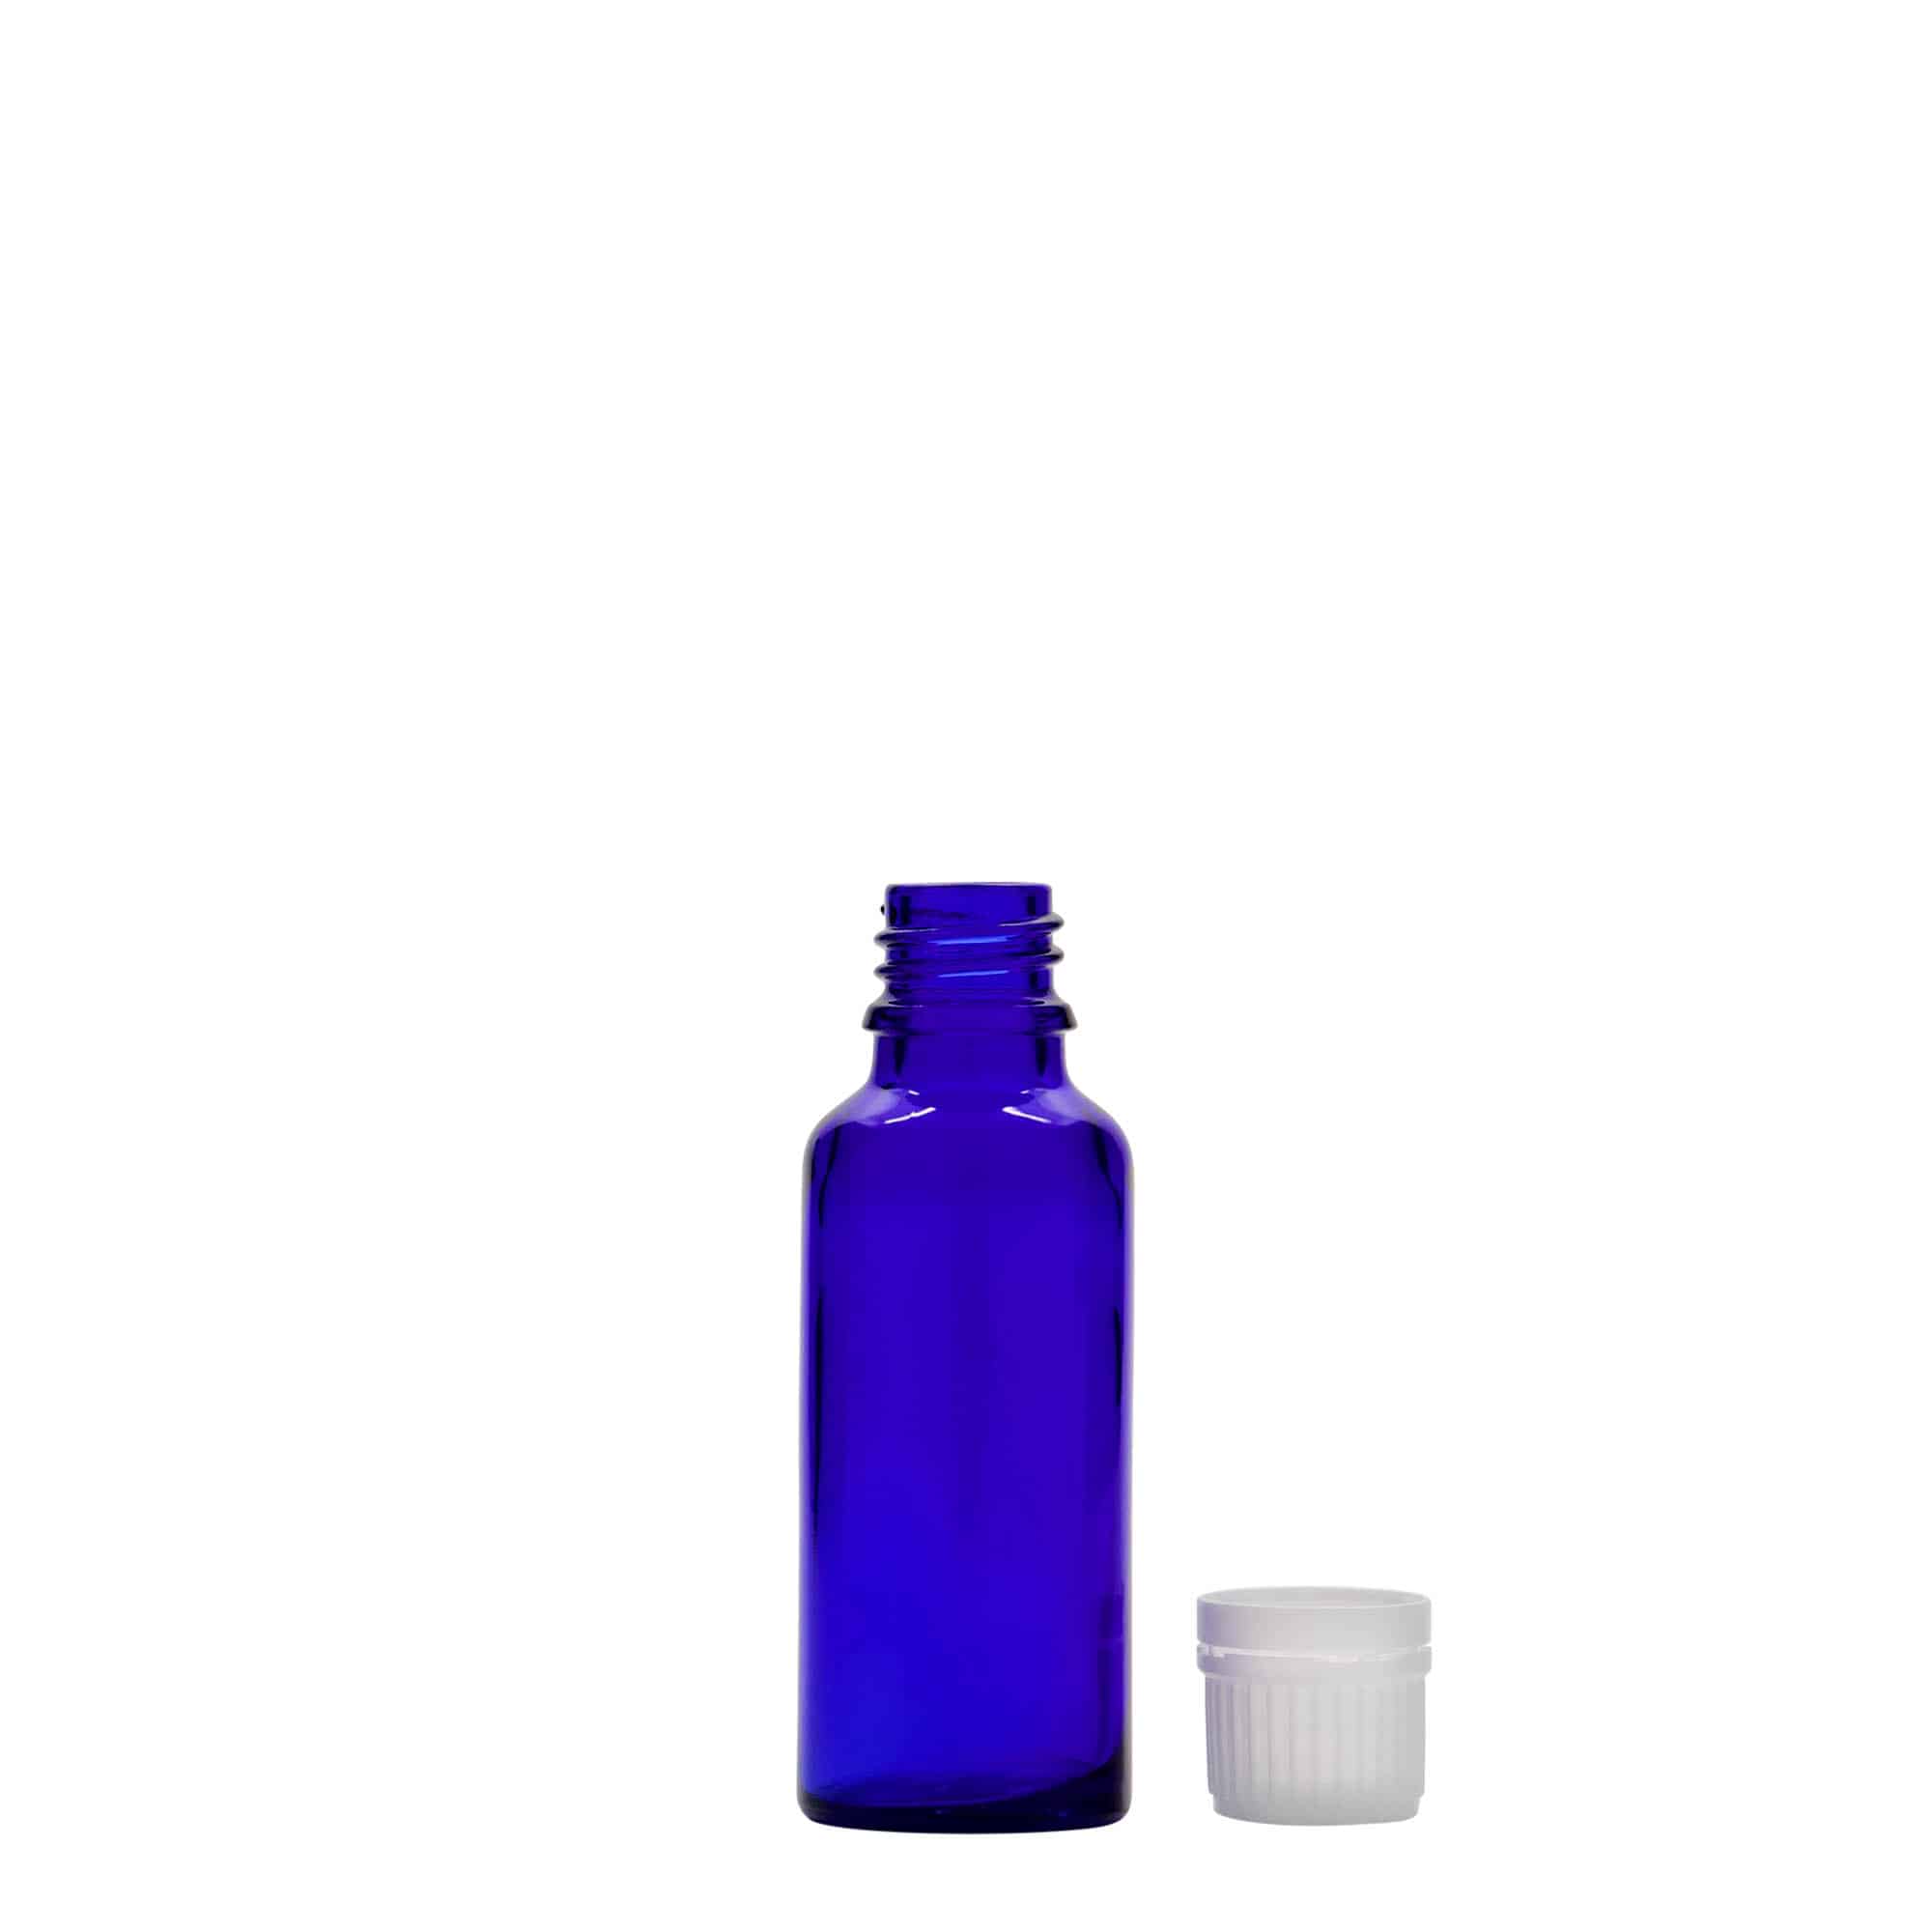 30 ml medicine bottle, glass, royal blue, closure: DIN 18